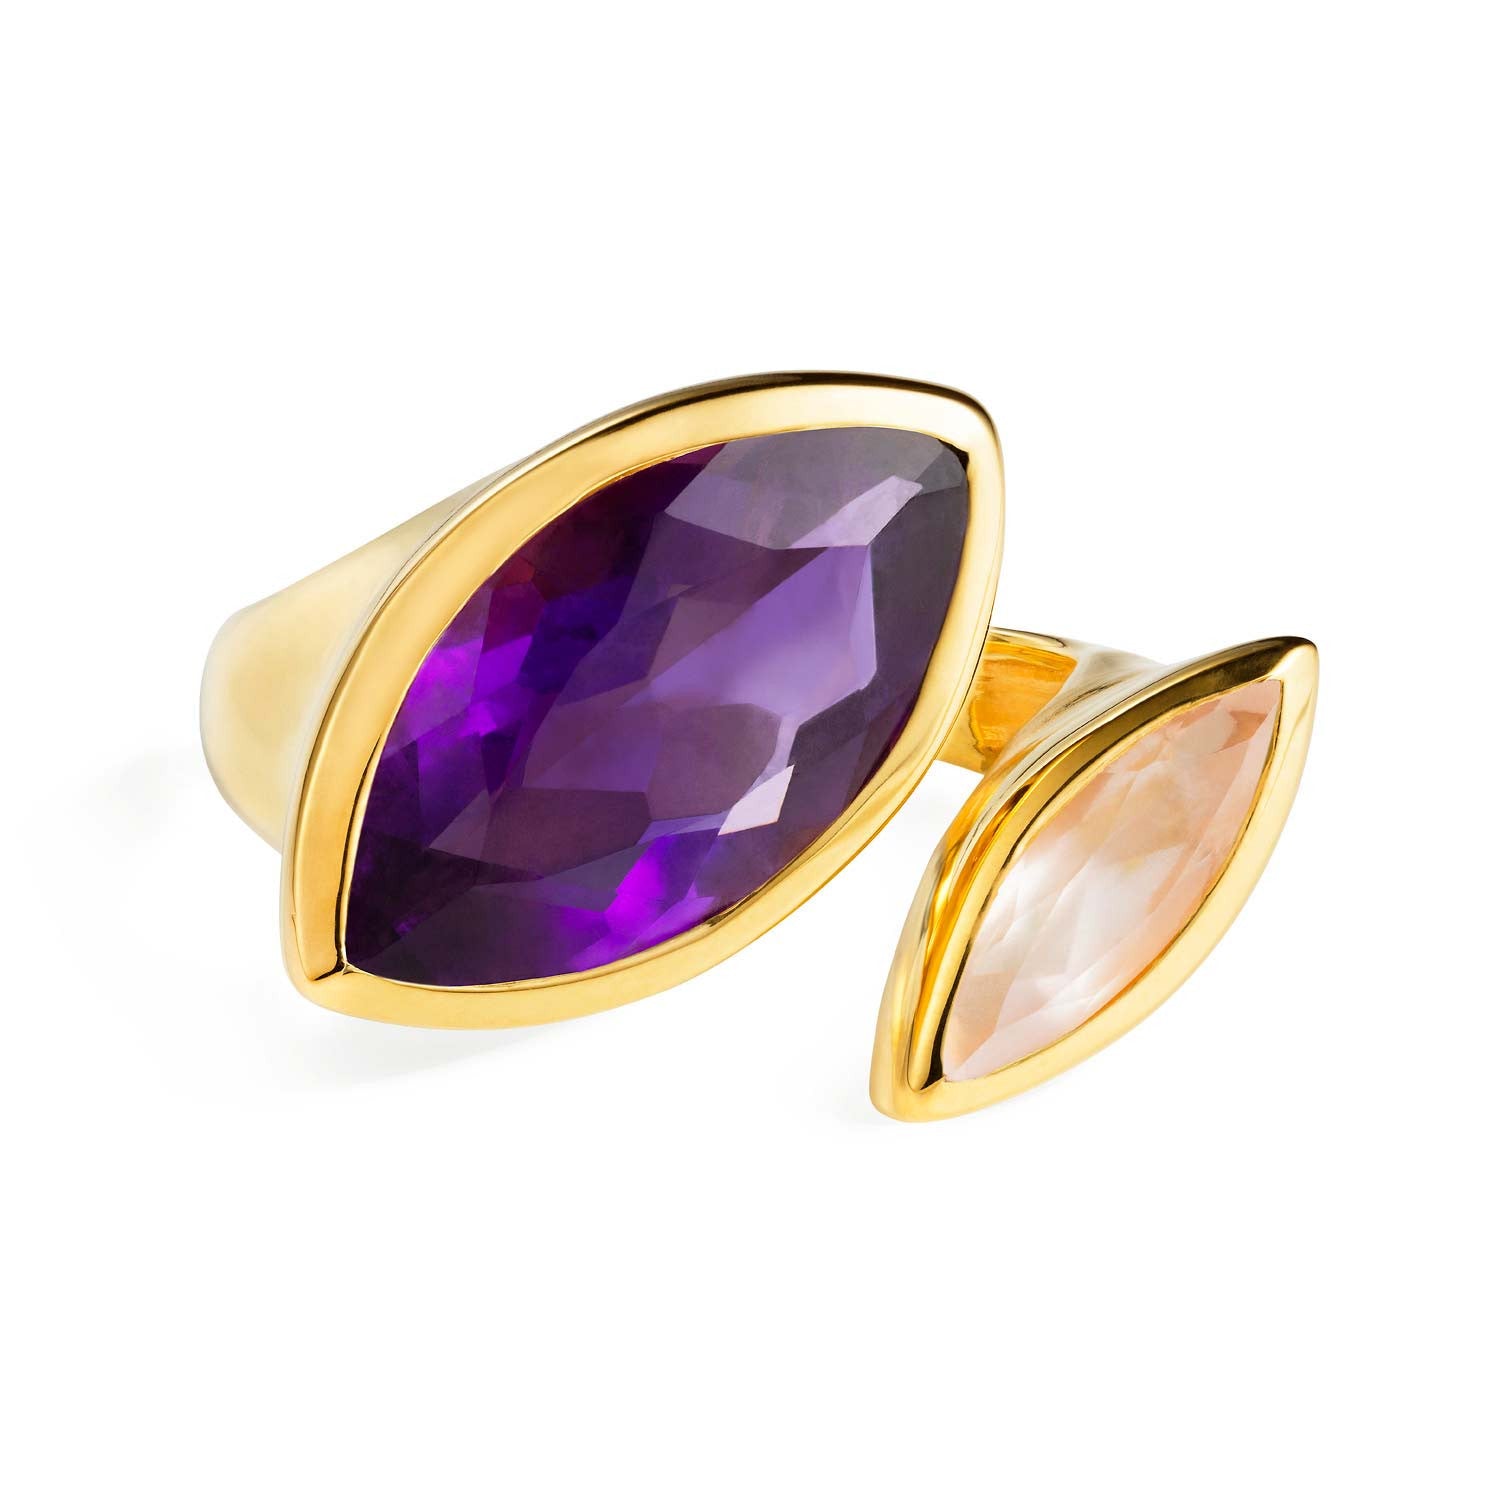 Gold vermeil cocktail ring, Purple Amethyst, Rose Quartz gemstone, geometric, unique British design